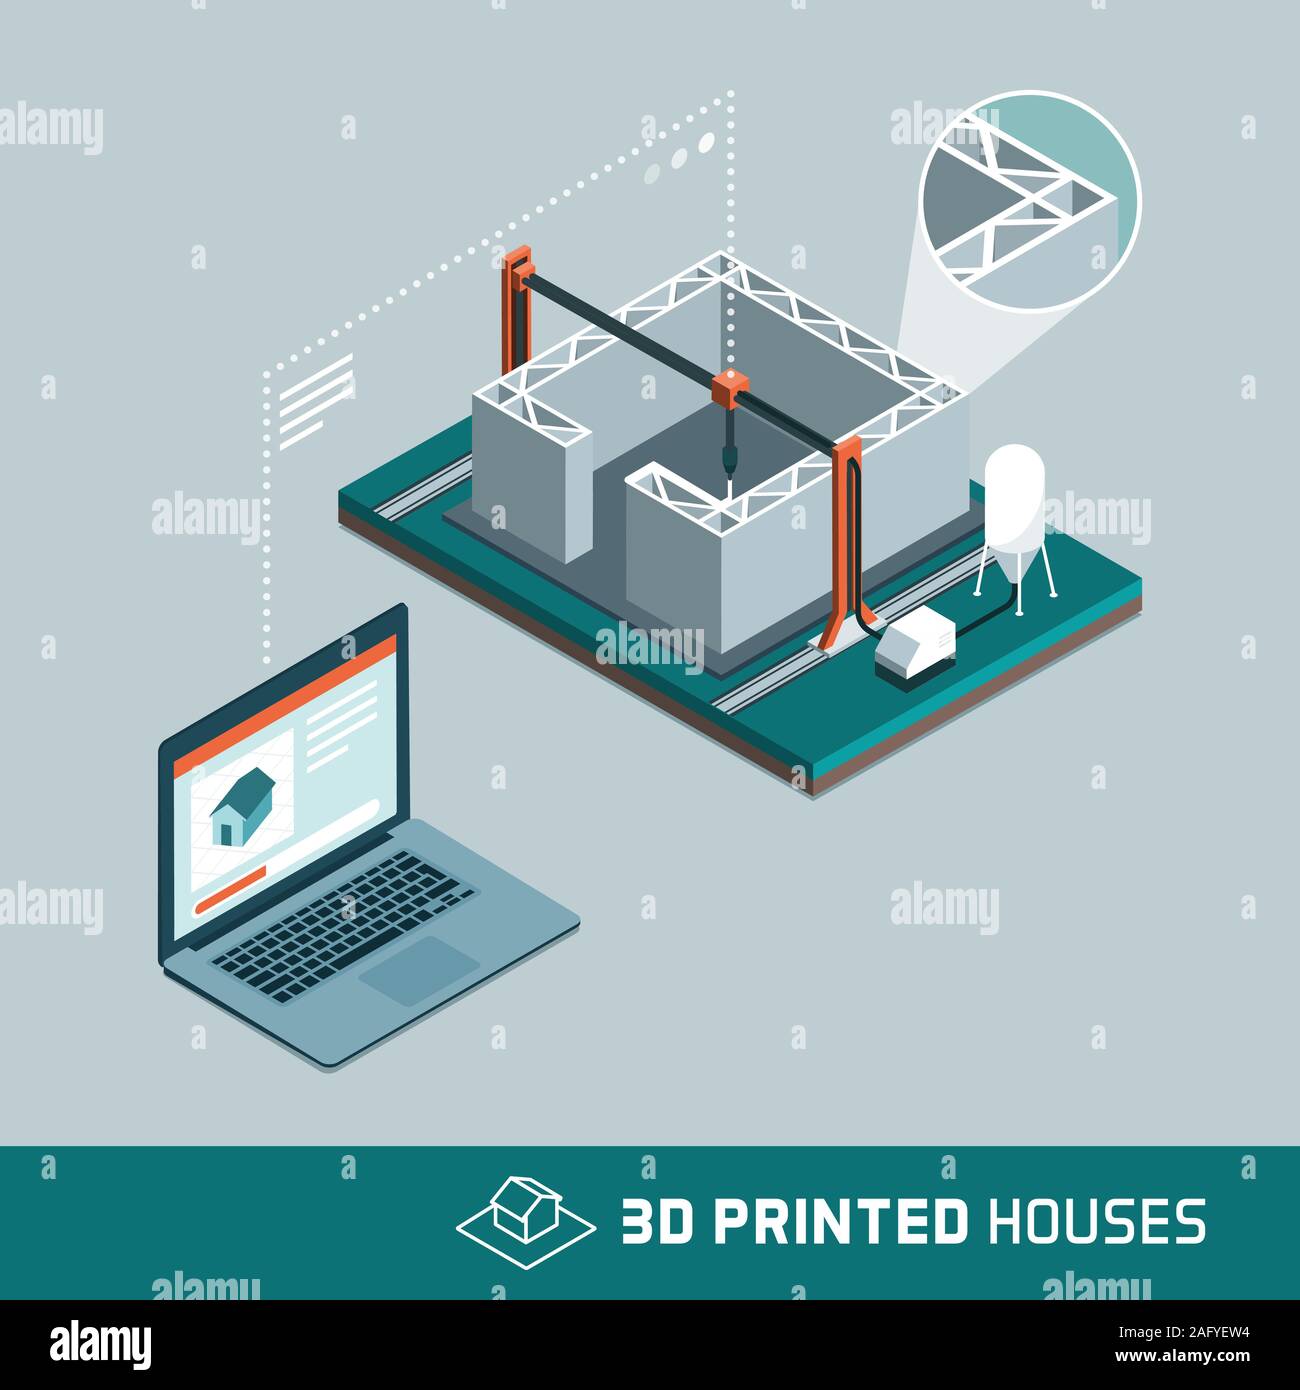 3D-Printing House-Technologie mit 3D-Drucker und Computer Daten übertragen und verarbeiten Informationen, Construction Industry Innovation verbunden, isome Stock Vektor